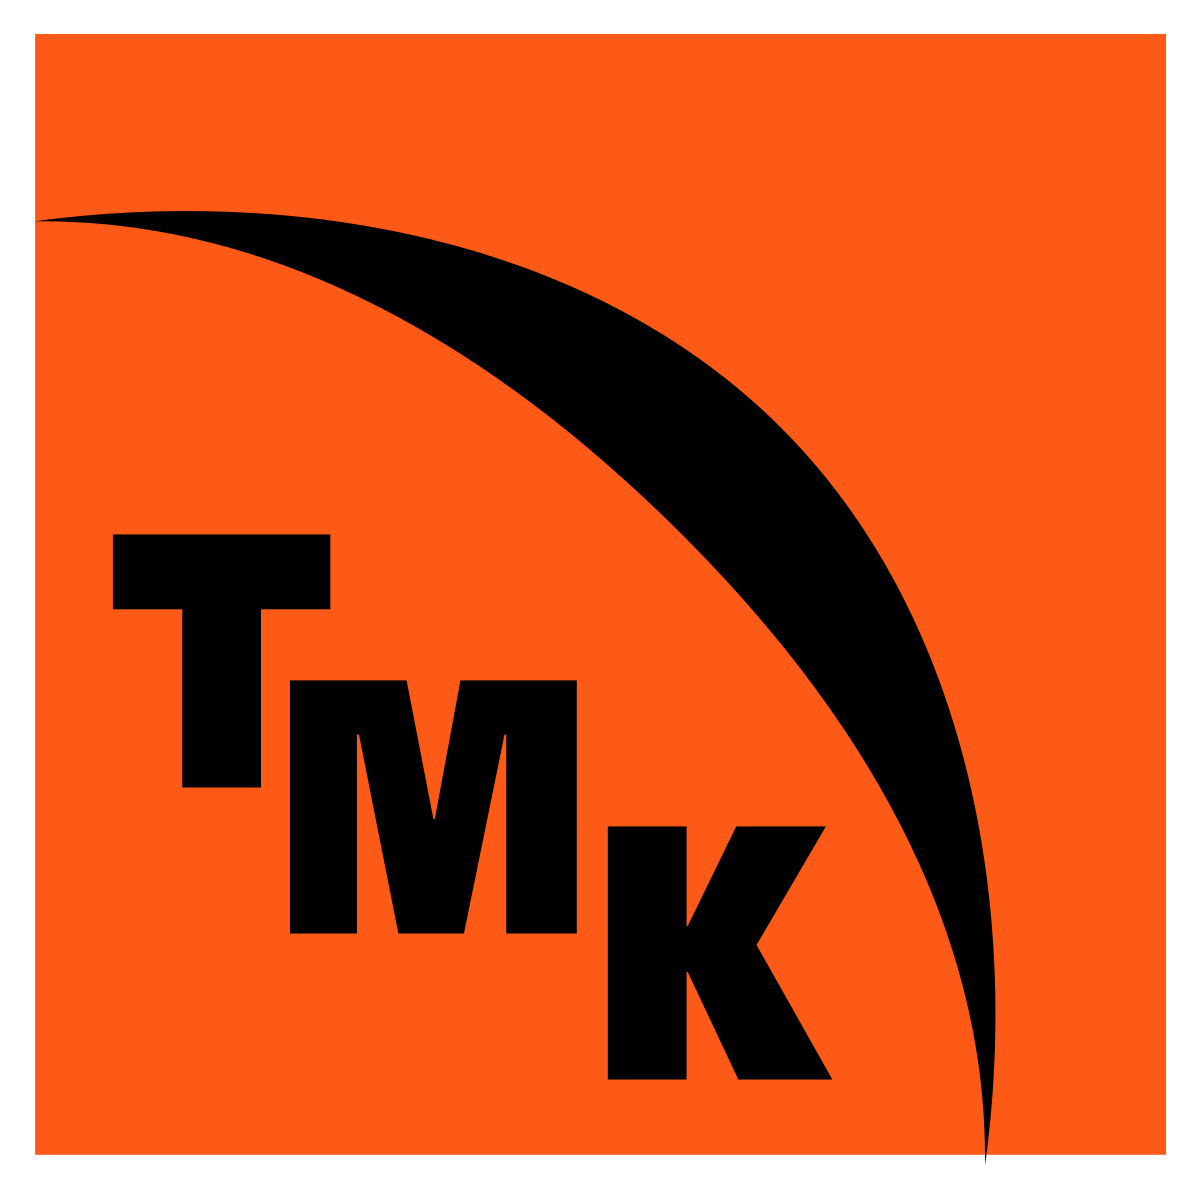 TMK